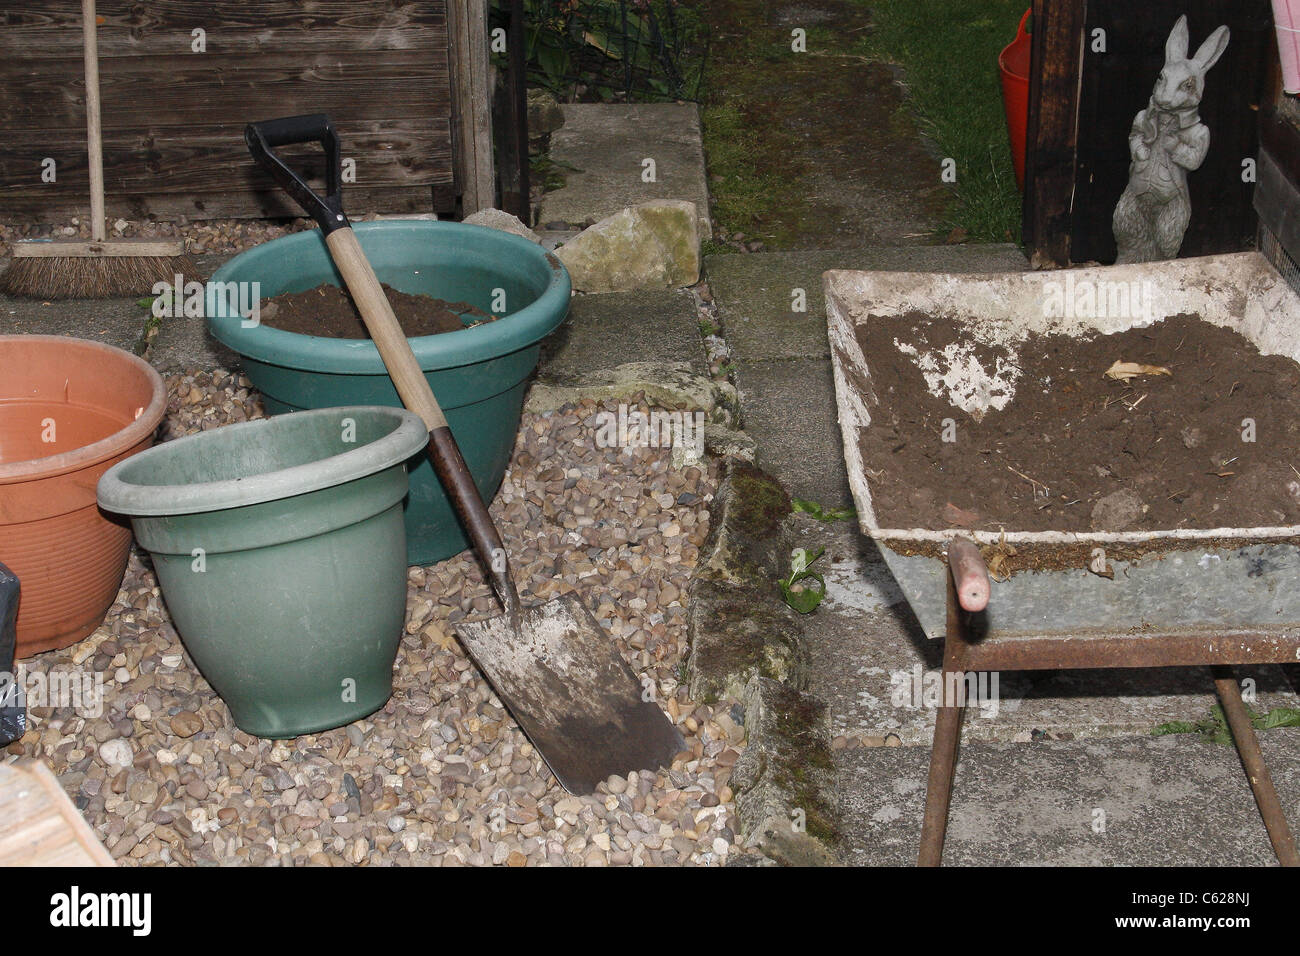 Immagine di vasche e di utensili da giardinaggio in giardino Foto Stock